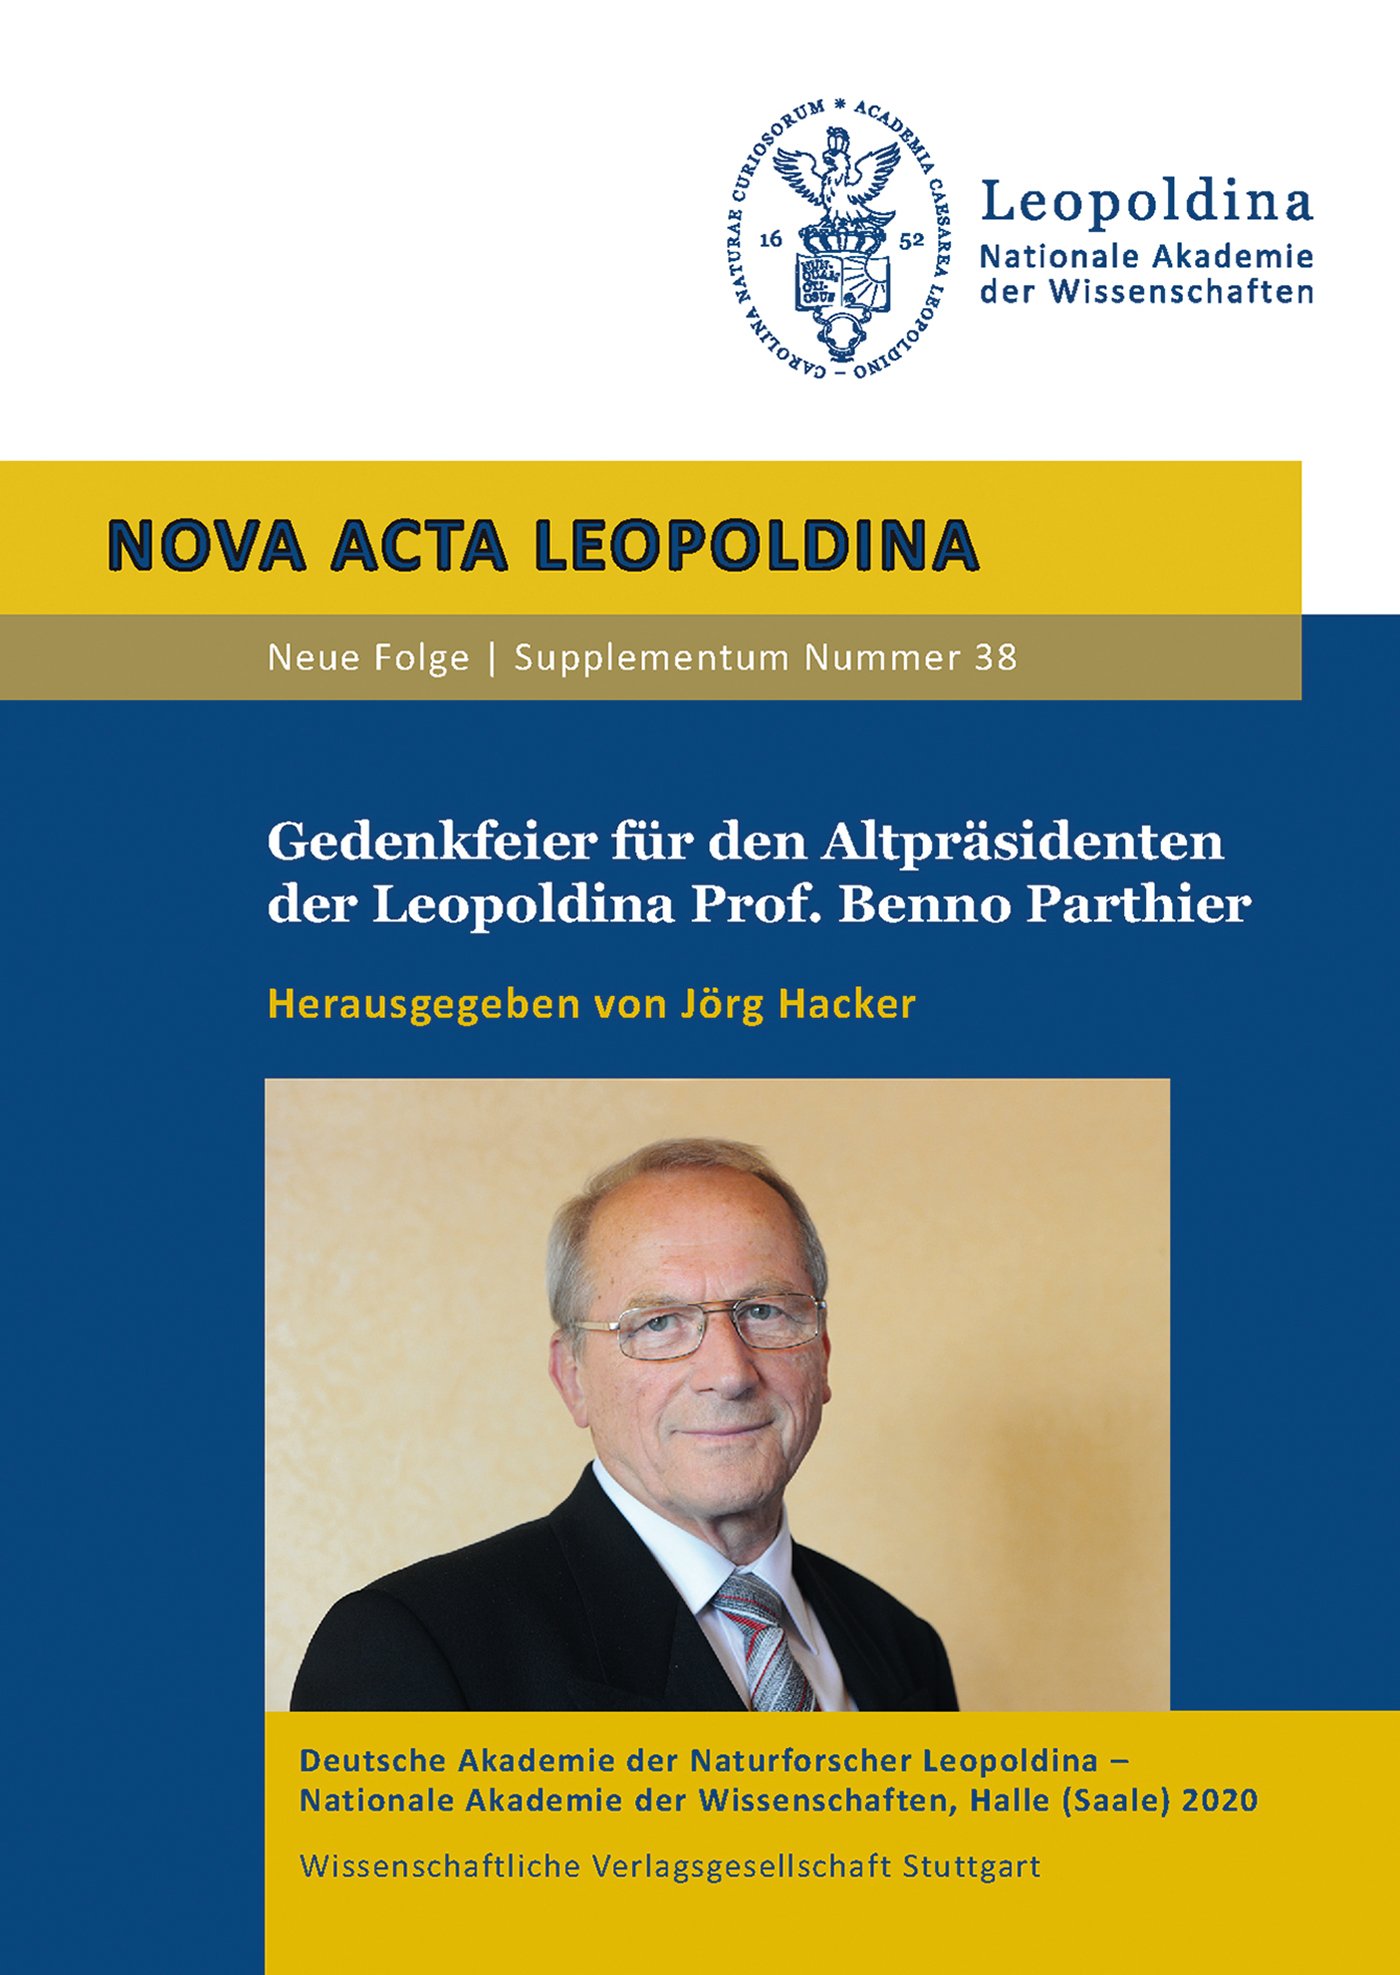 Gedenkfeier für den Altpräsidenten der Leopoldina Prof. Benno Parthier